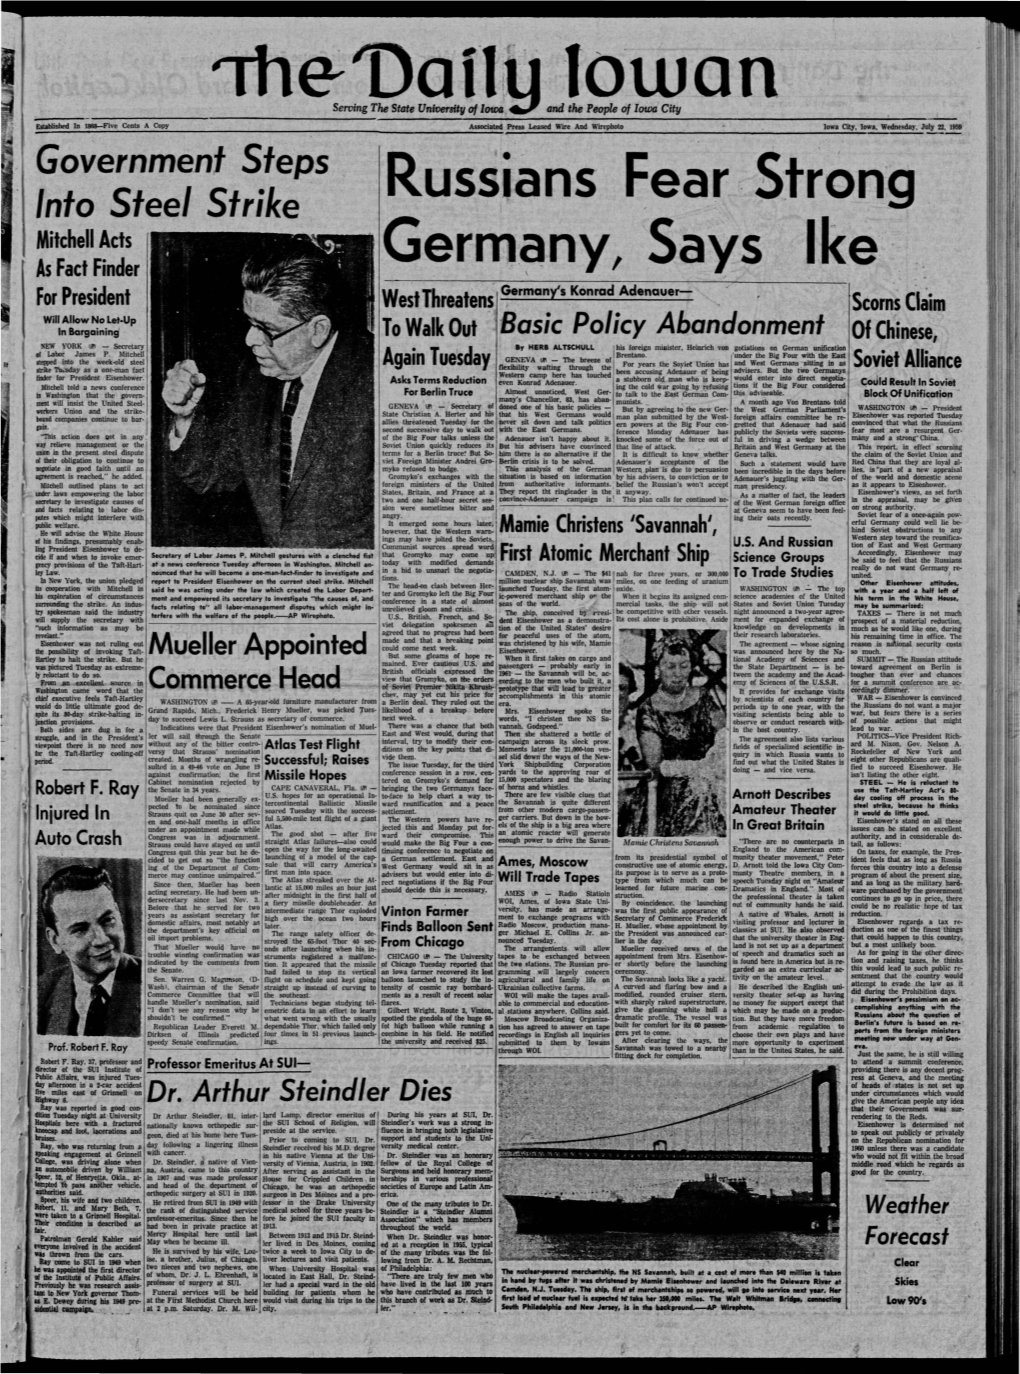 Daily Iowan (Iowa City, Iowa), 1959-07-22